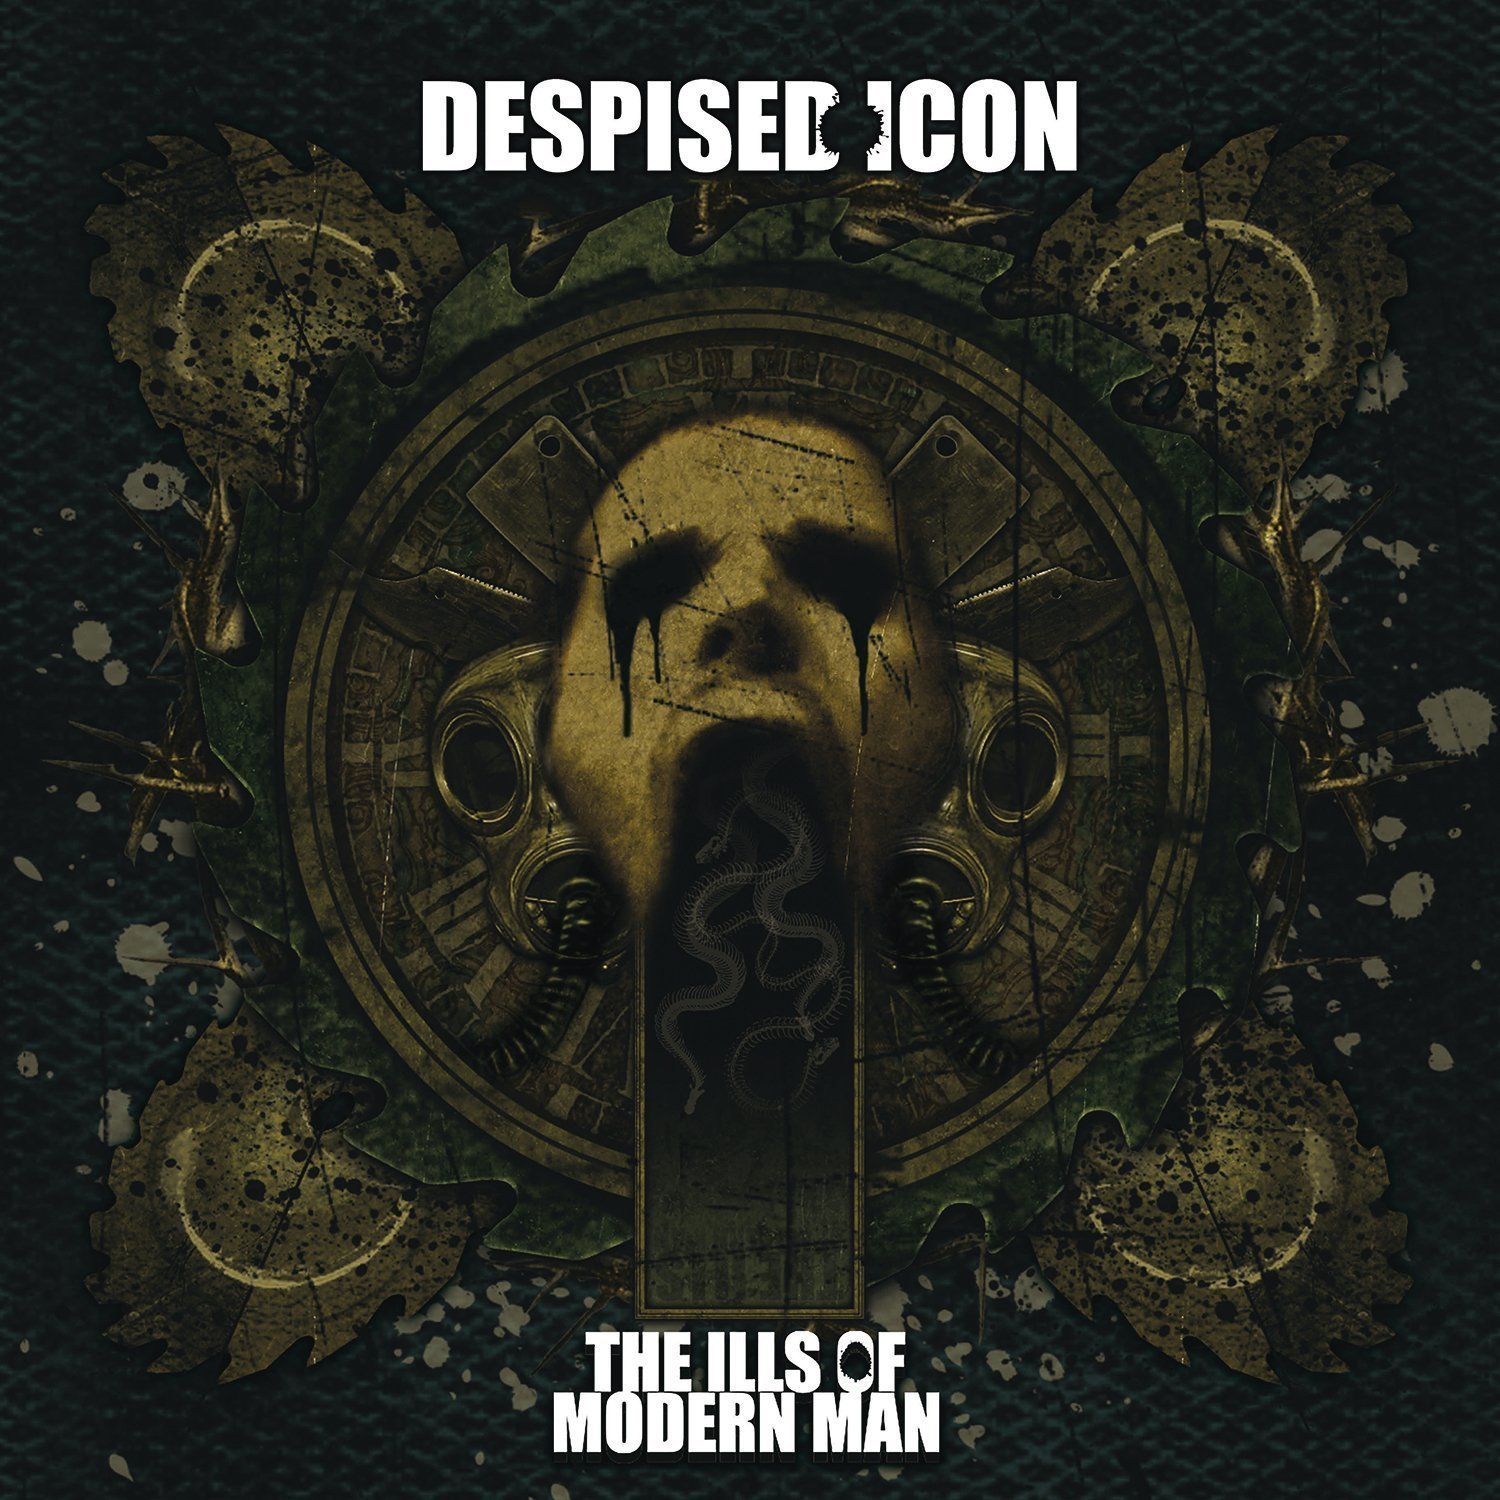 LP Despised Icon Ills of Modern Man (Reissue) (Vinyl LP)